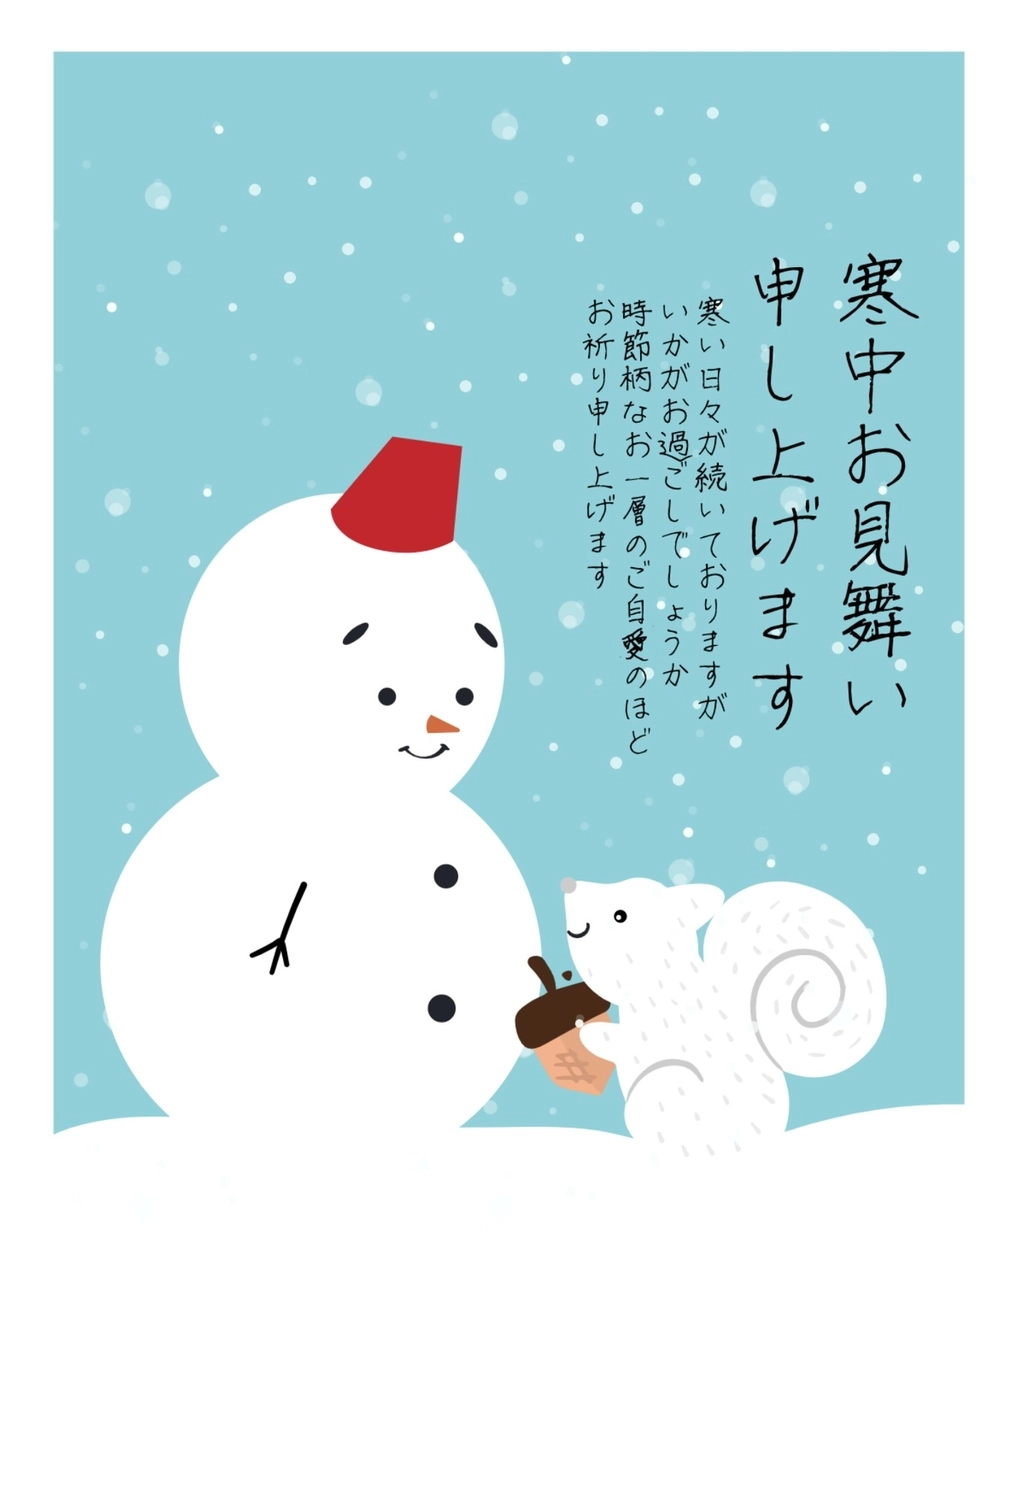 雪だるまとリスの寒中見舞い, Tiny, create, design, Mid-winter Greeting template